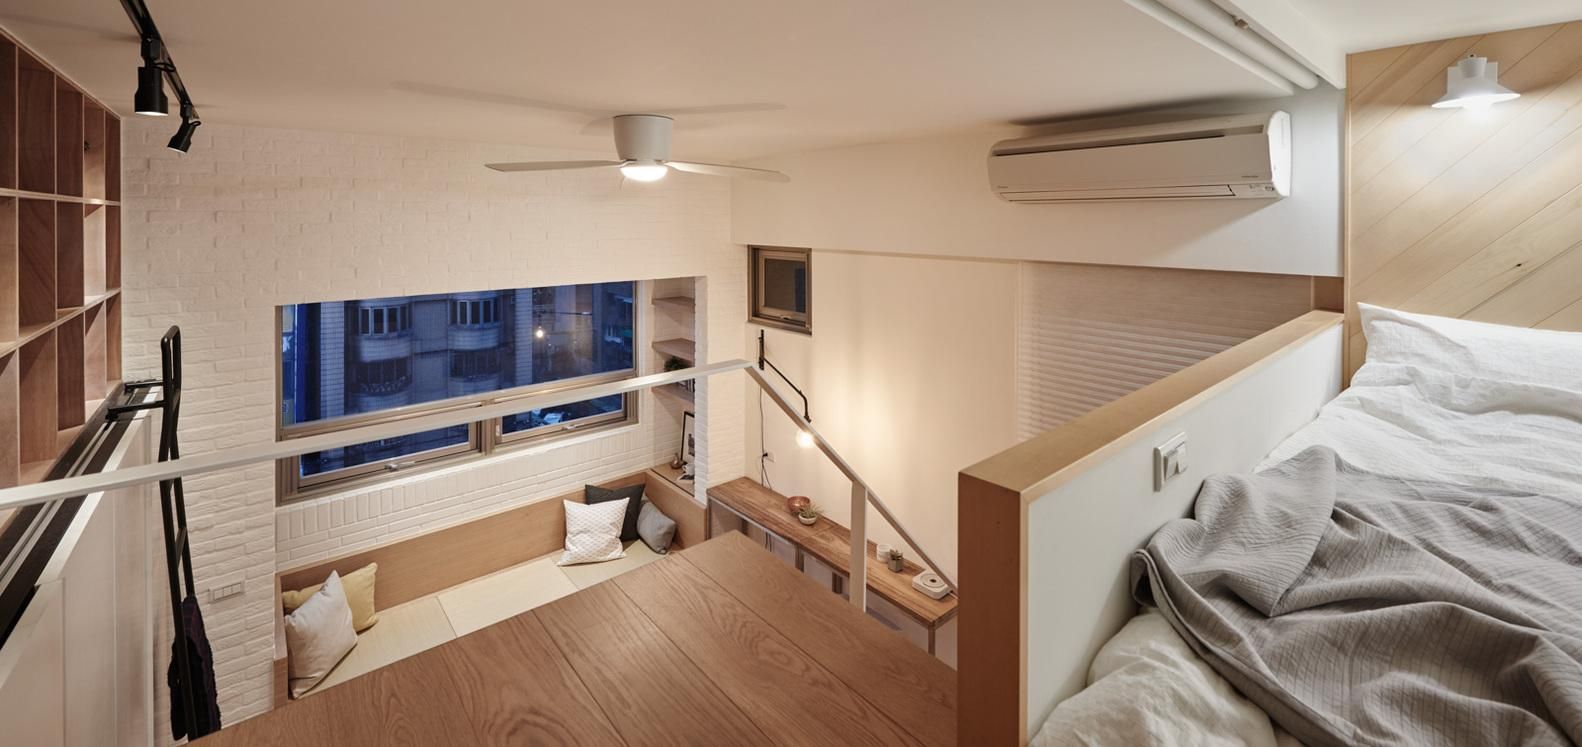 В лучших традициях хюге – в Тайване подготовили проект уютной двухуровневой квартиры: фото